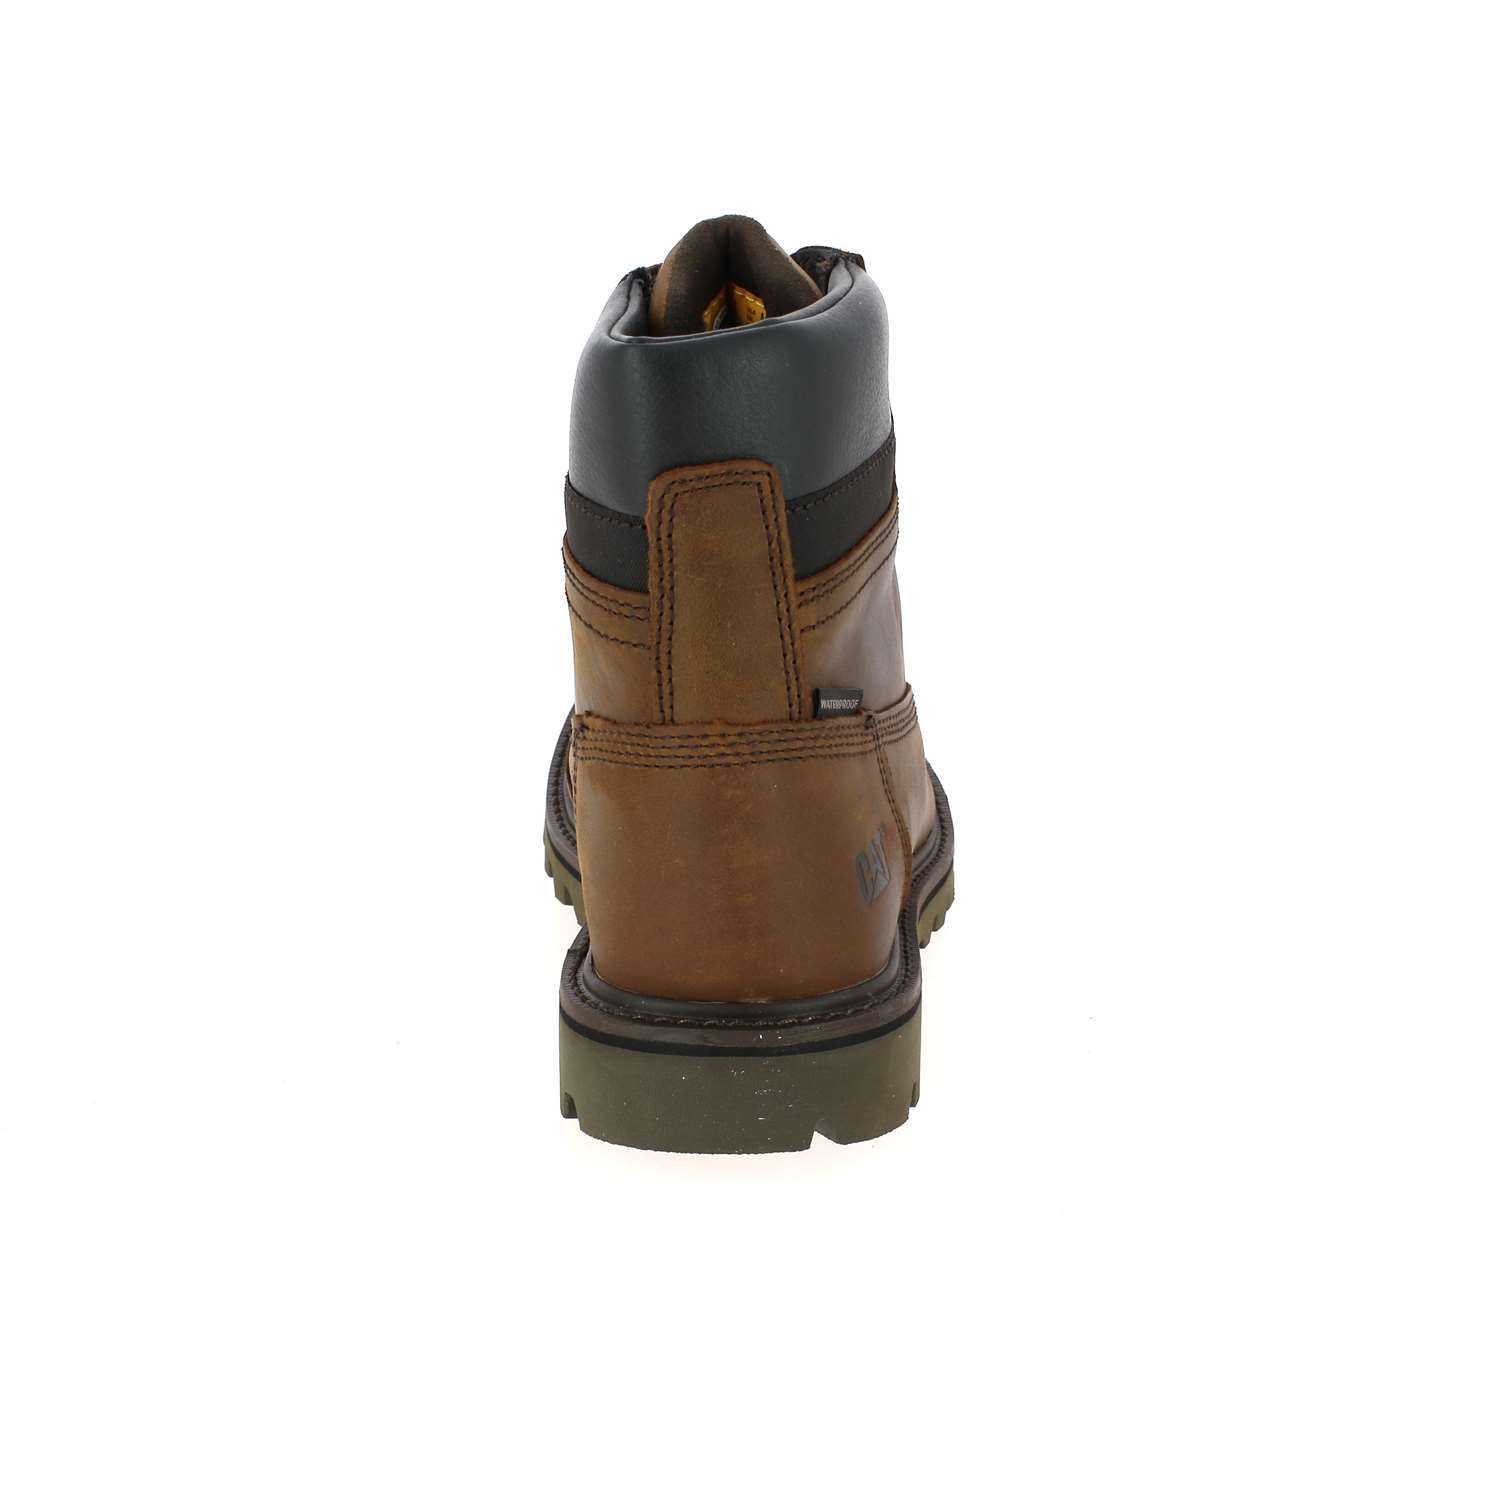 4 - DEPLETE - CATERPILLAR - Boots et bottines - Textile, Caoutchouc, Cuir